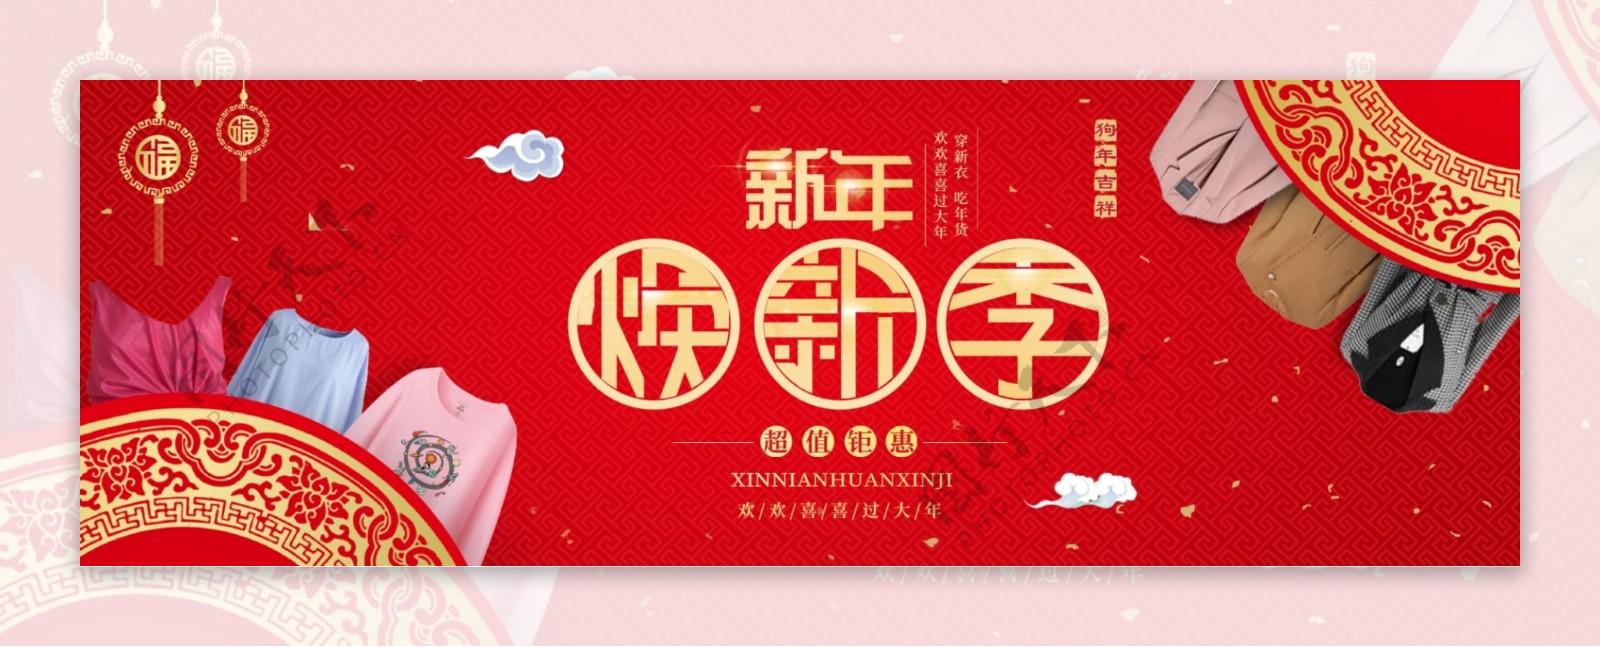 红色中国风新年焕新季女装淘宝电商海报